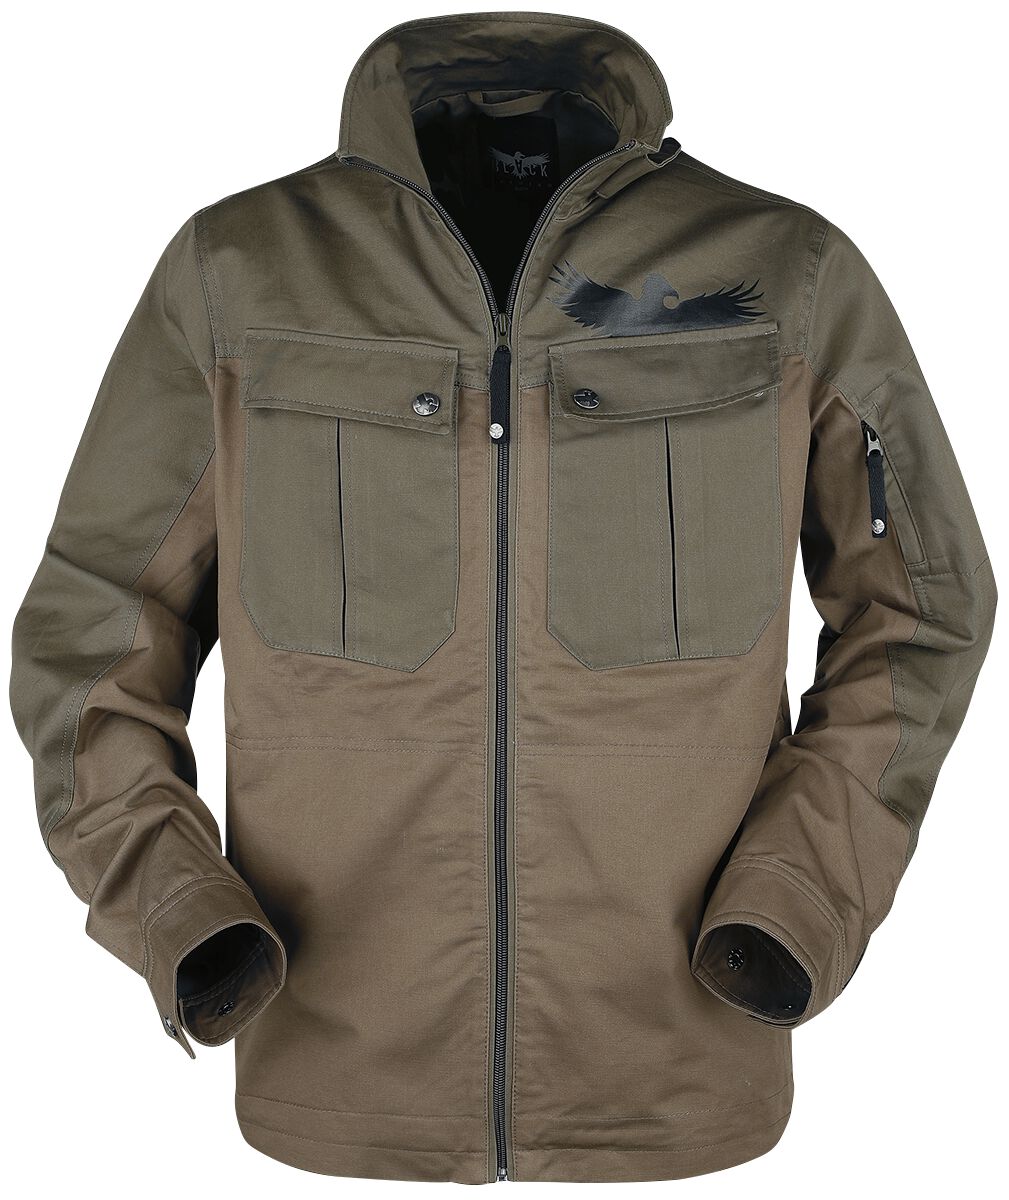 Image of Black Premium by EMP braune Jacke mit großen Brusttaschen Jacke braun